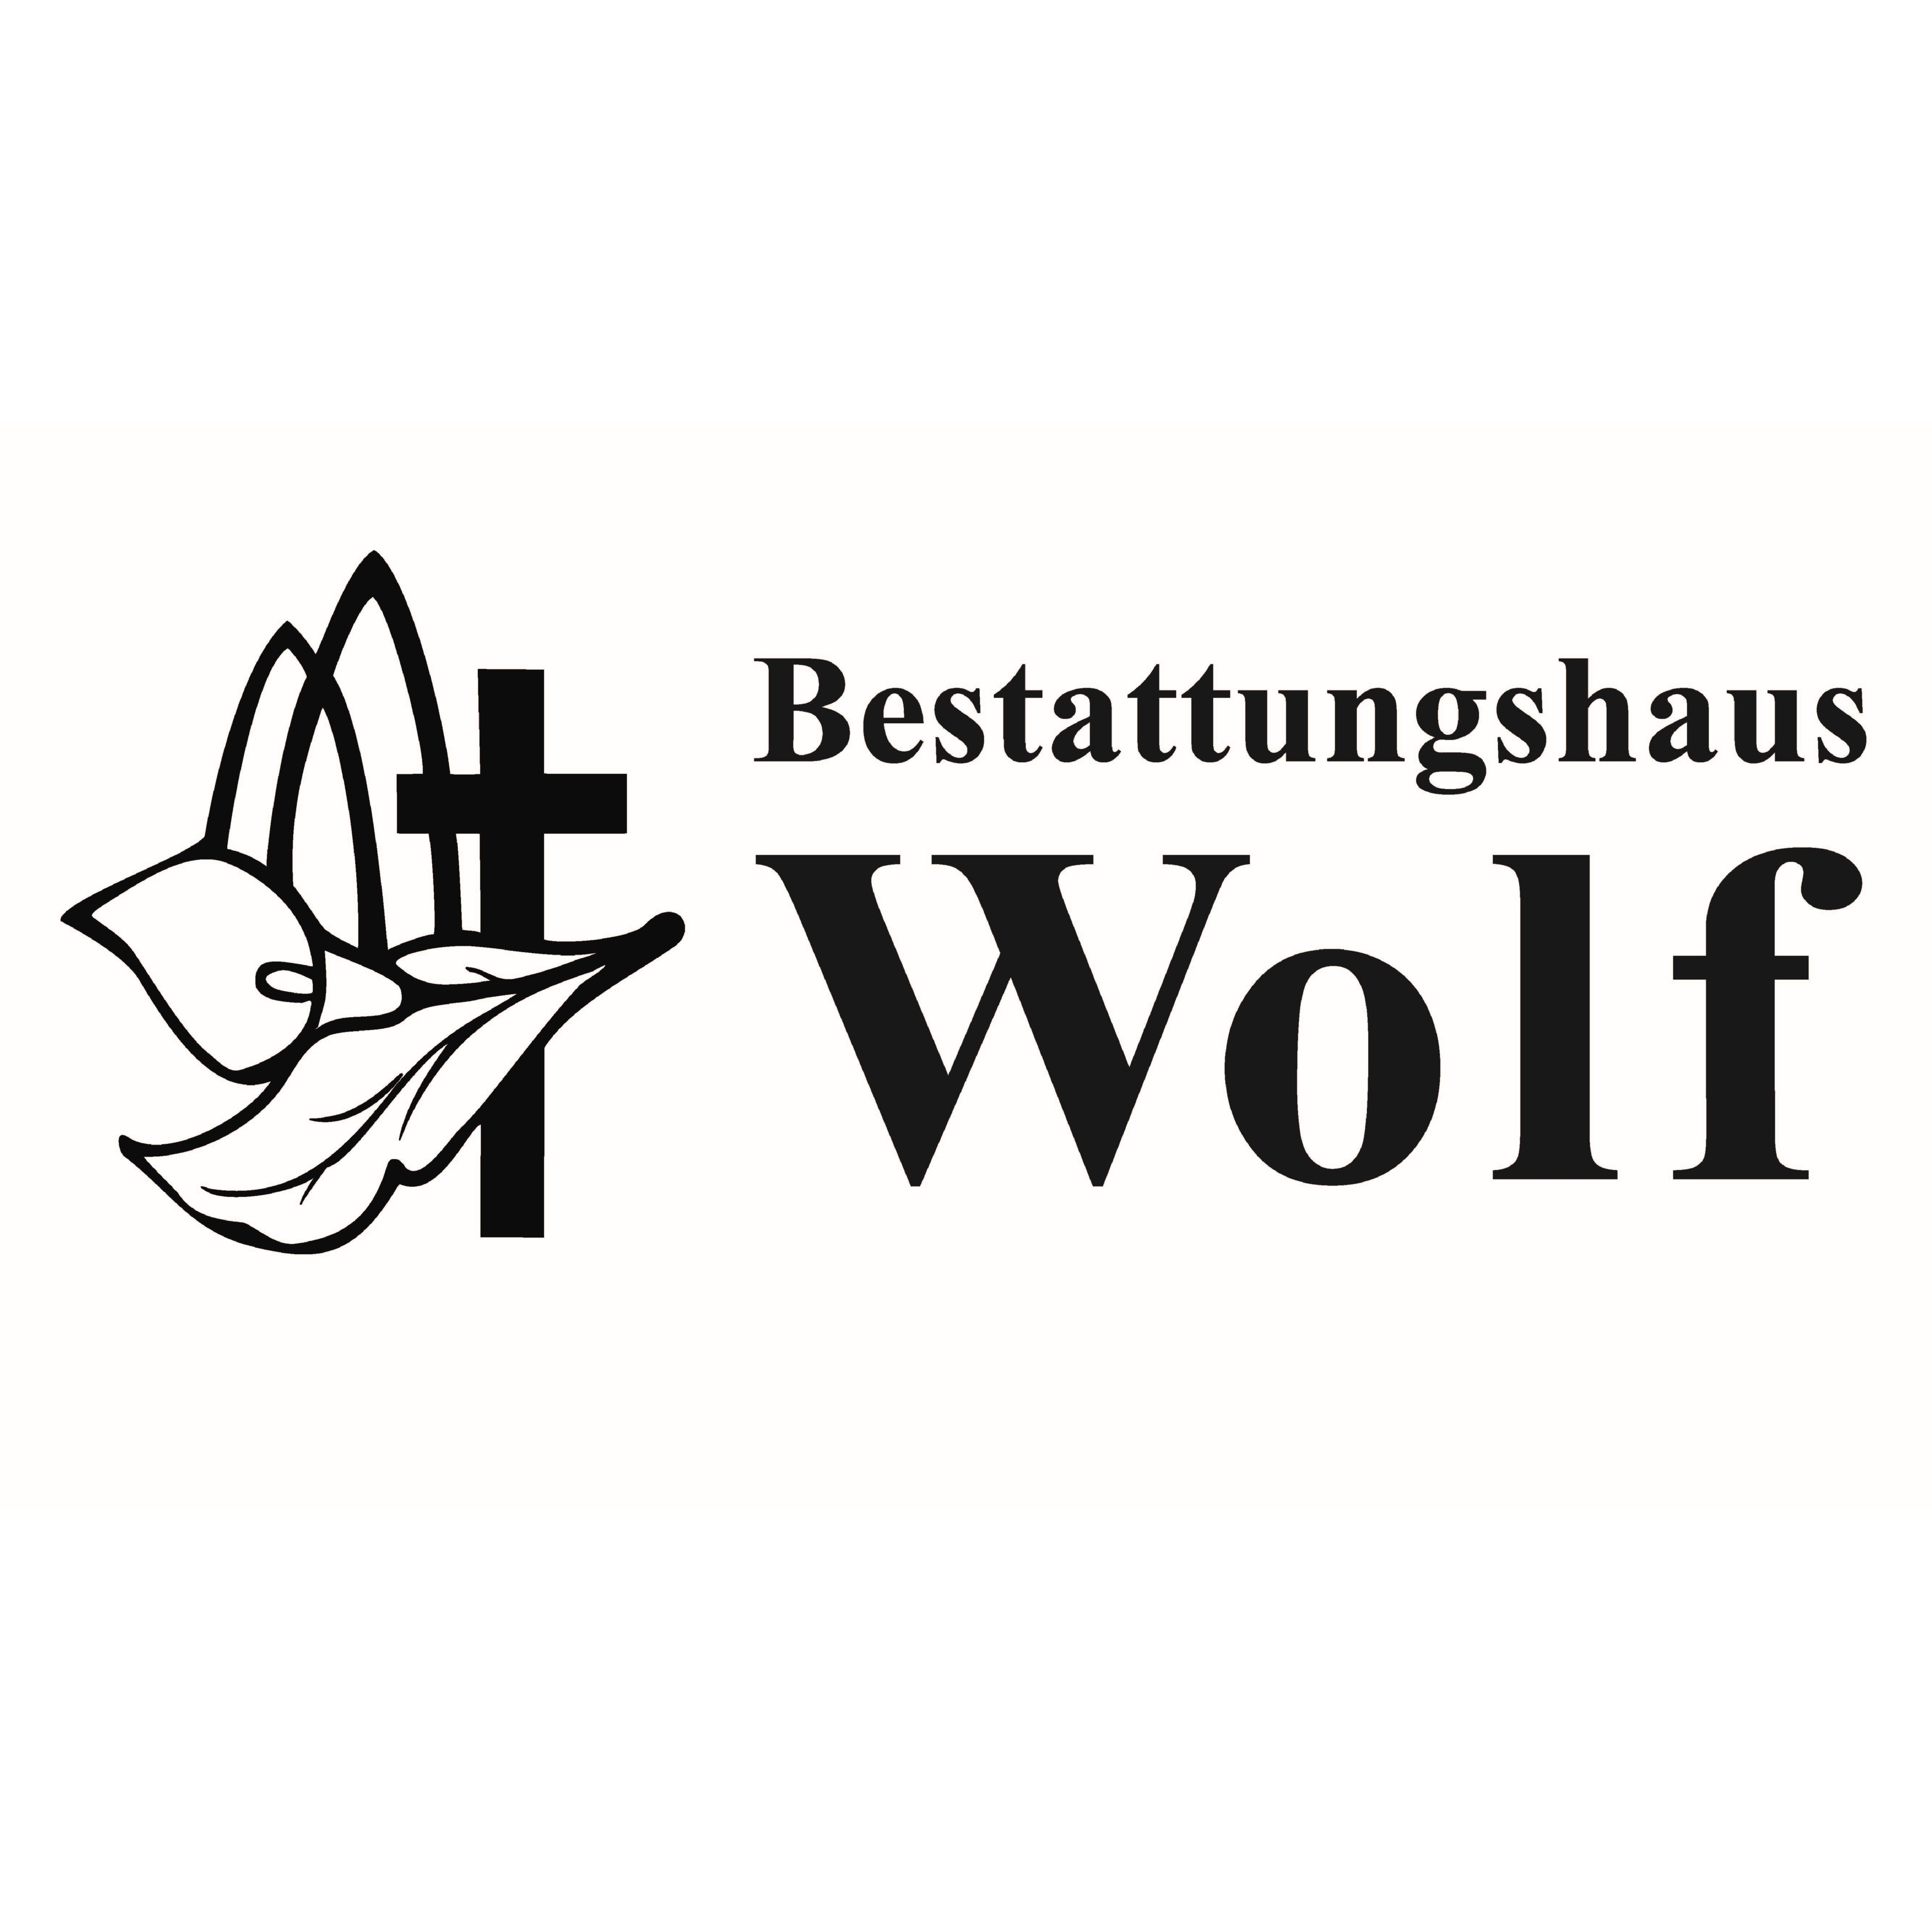 Bestattungshaus Wolf in Elxleben an der Gera - Logo